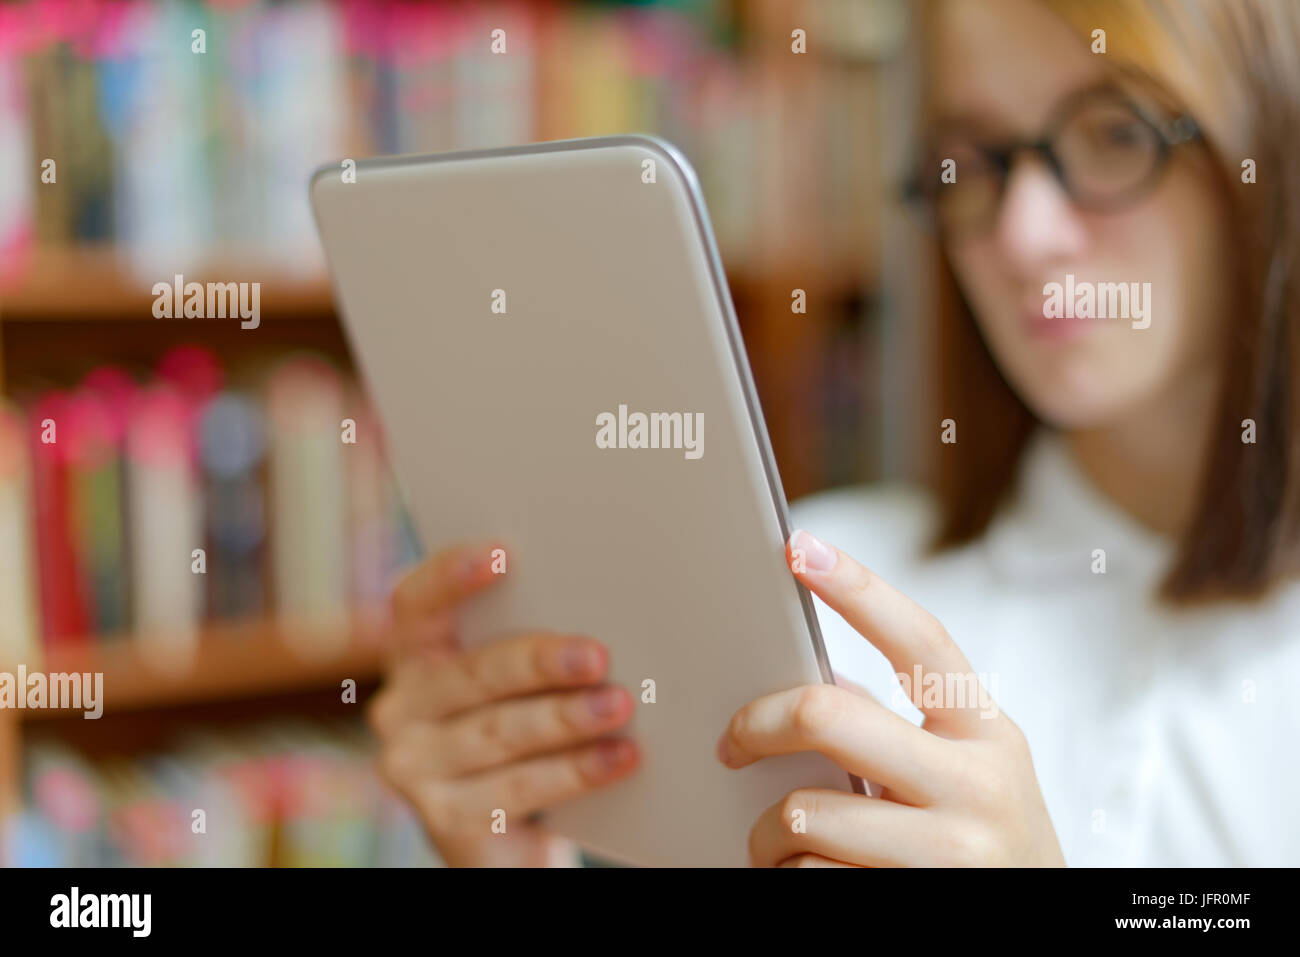 People : jeune fille, étudiante, faisant usage de l'ordinateur tablette ou e-book reader, dans une bibliothèque ou à la librairie Banque D'Images